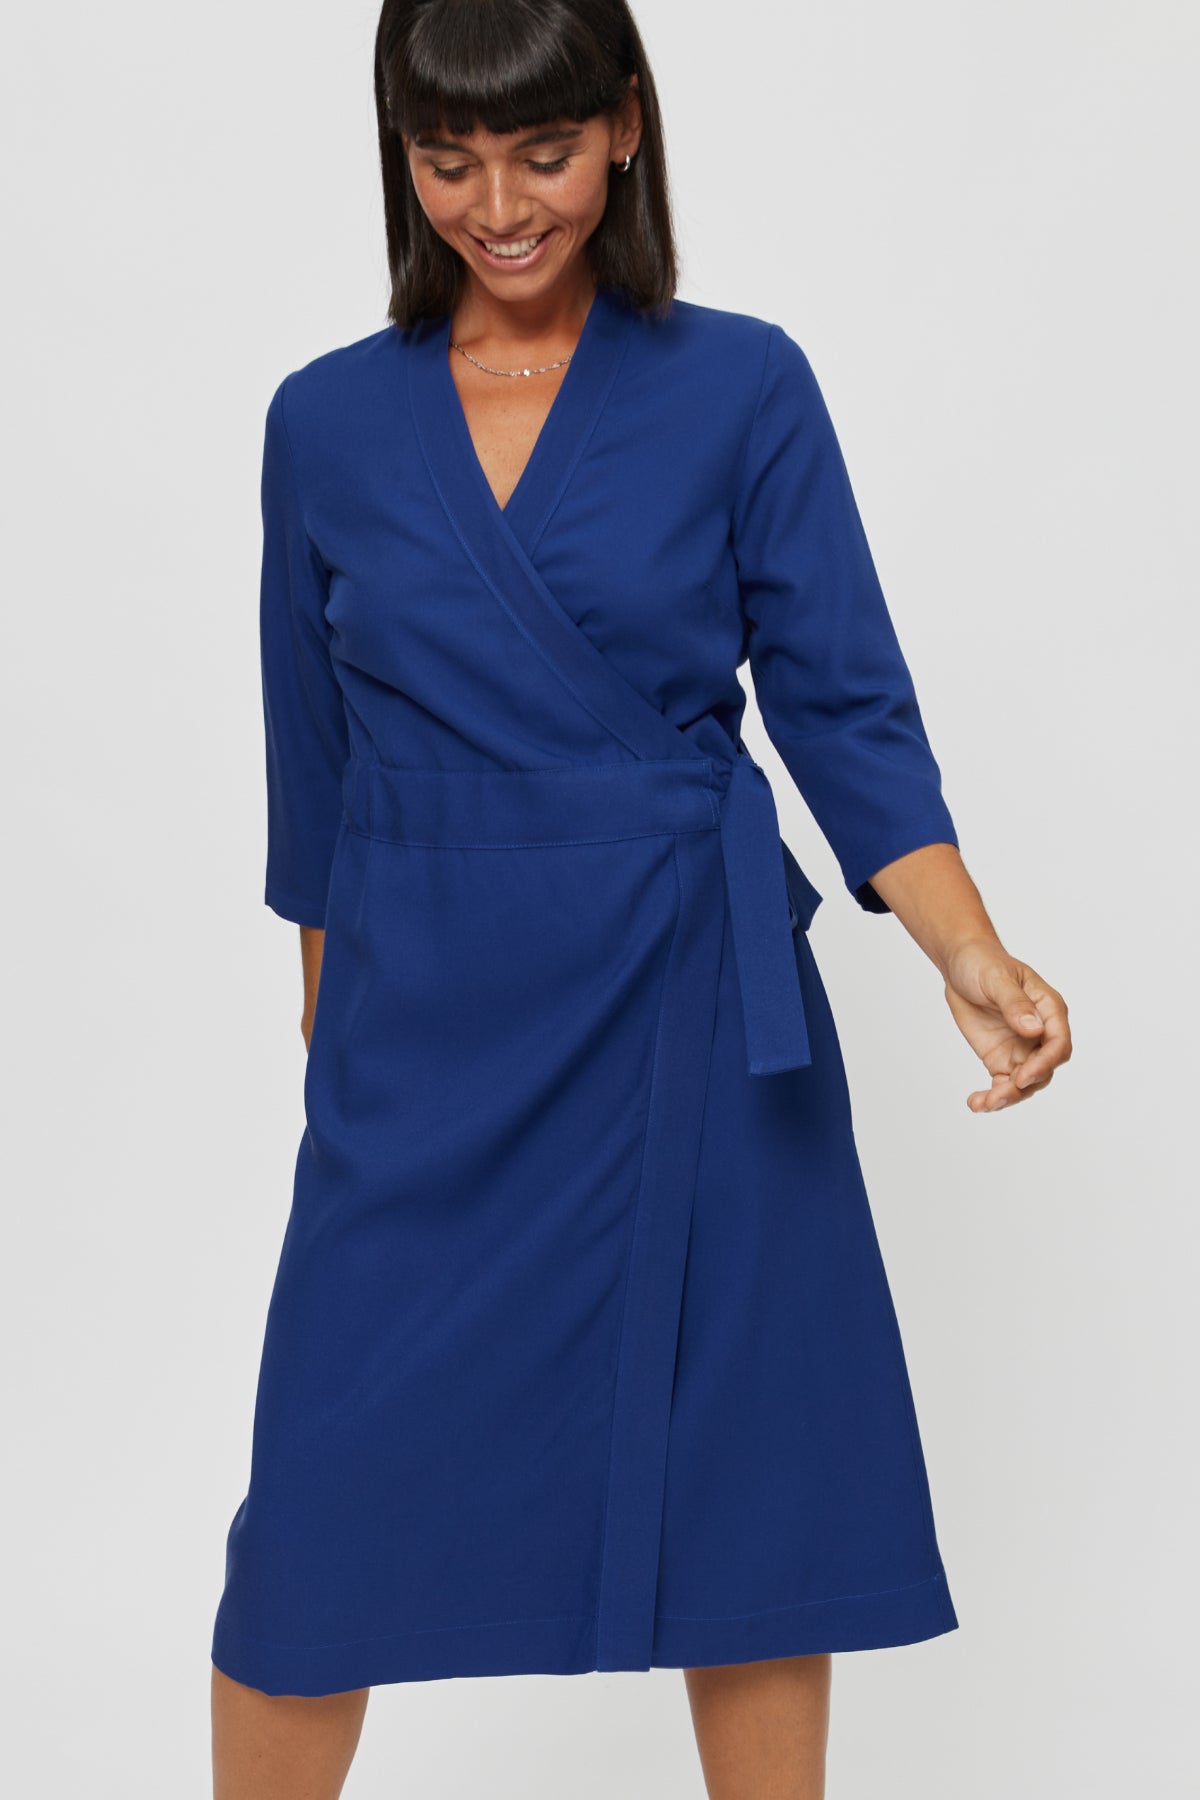 Blaues Wickelkleid Sandra aus 100% Viskose von Ayani